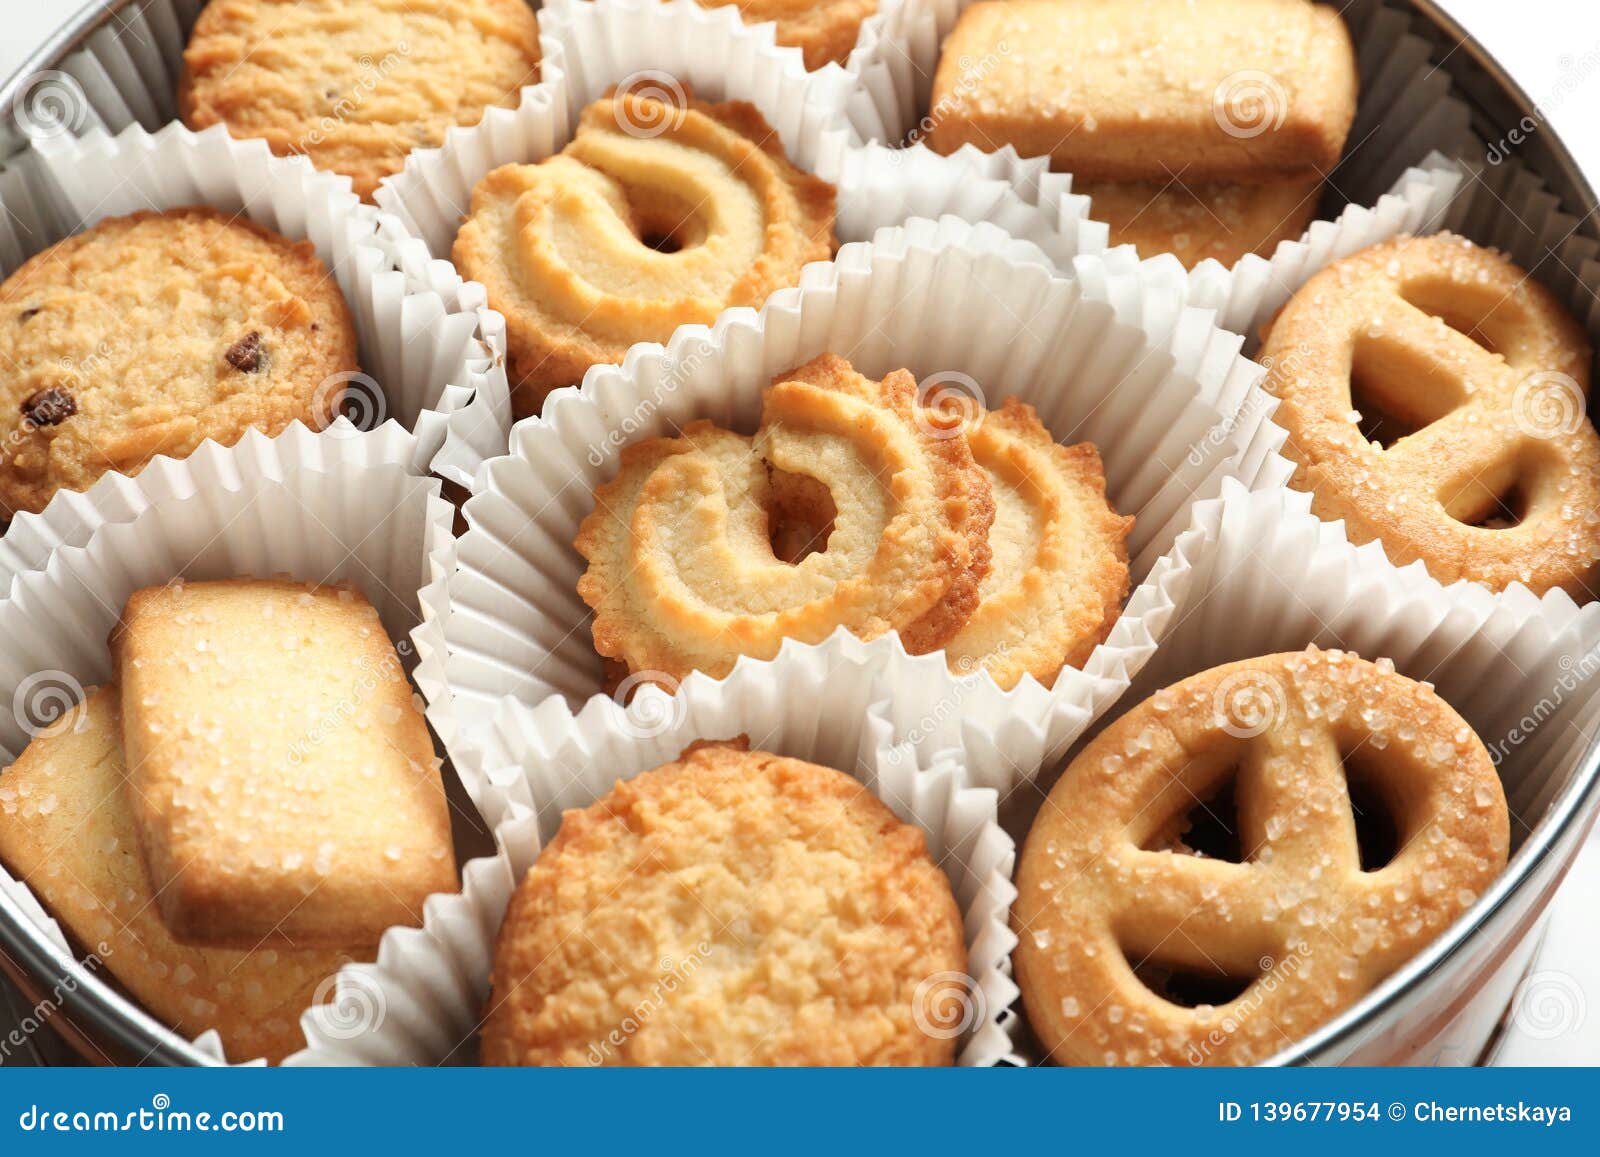 Danish Butter Cookies Stock Photos - Download 2,162 ...